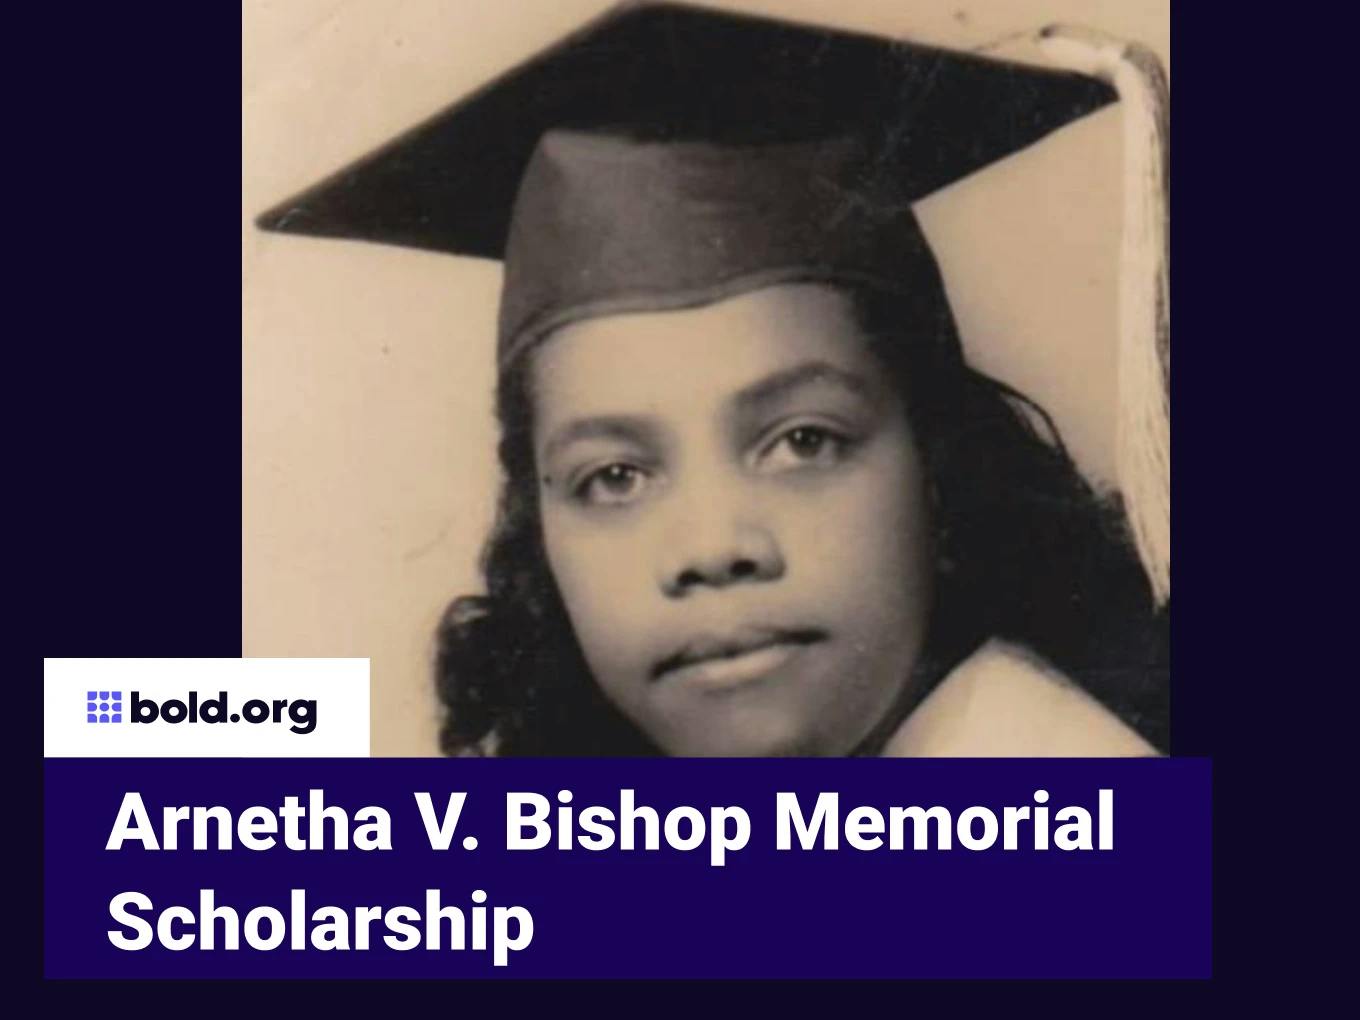 Arnetha V. Bishop Memorial Scholarship